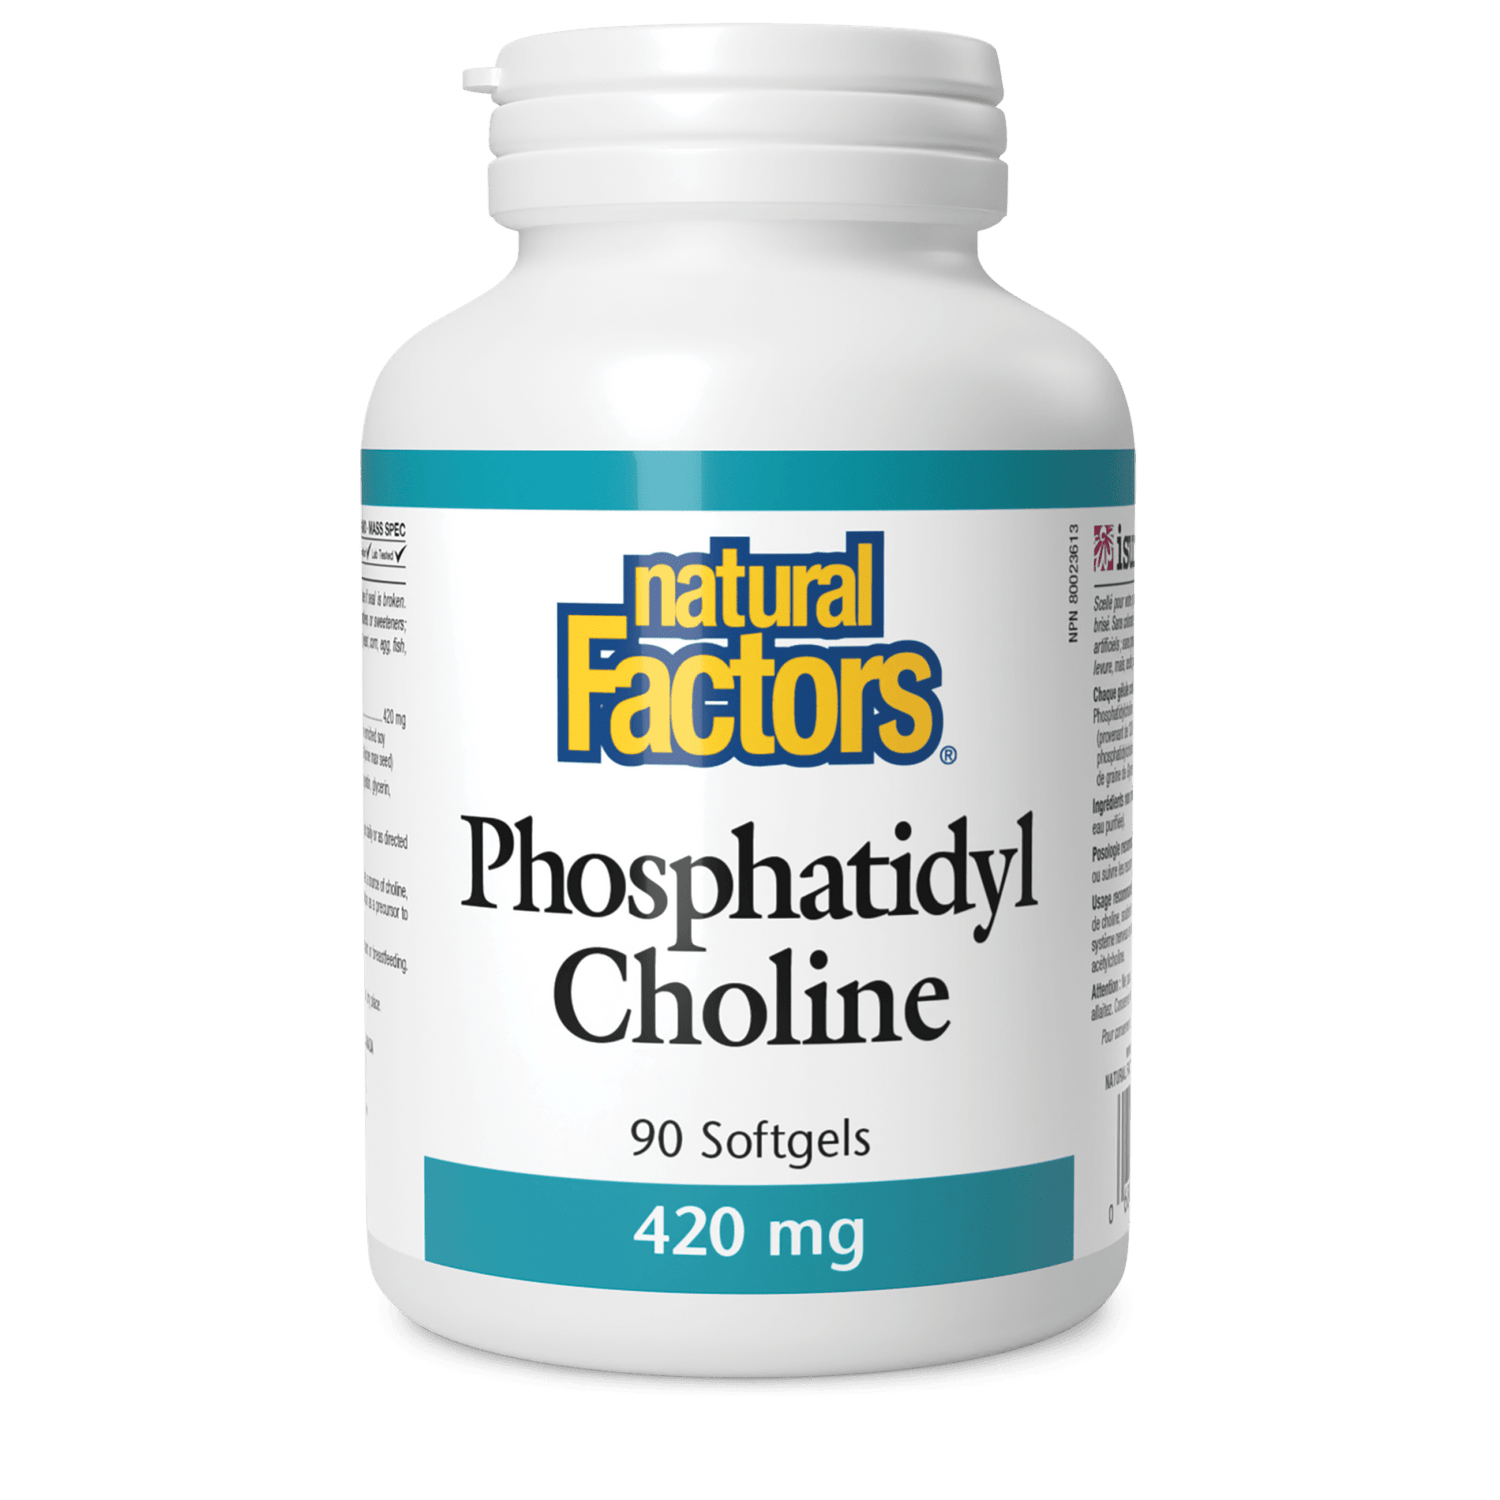 Phosphatidyl Choline 420 mg, Natural Factors|v|image|2605